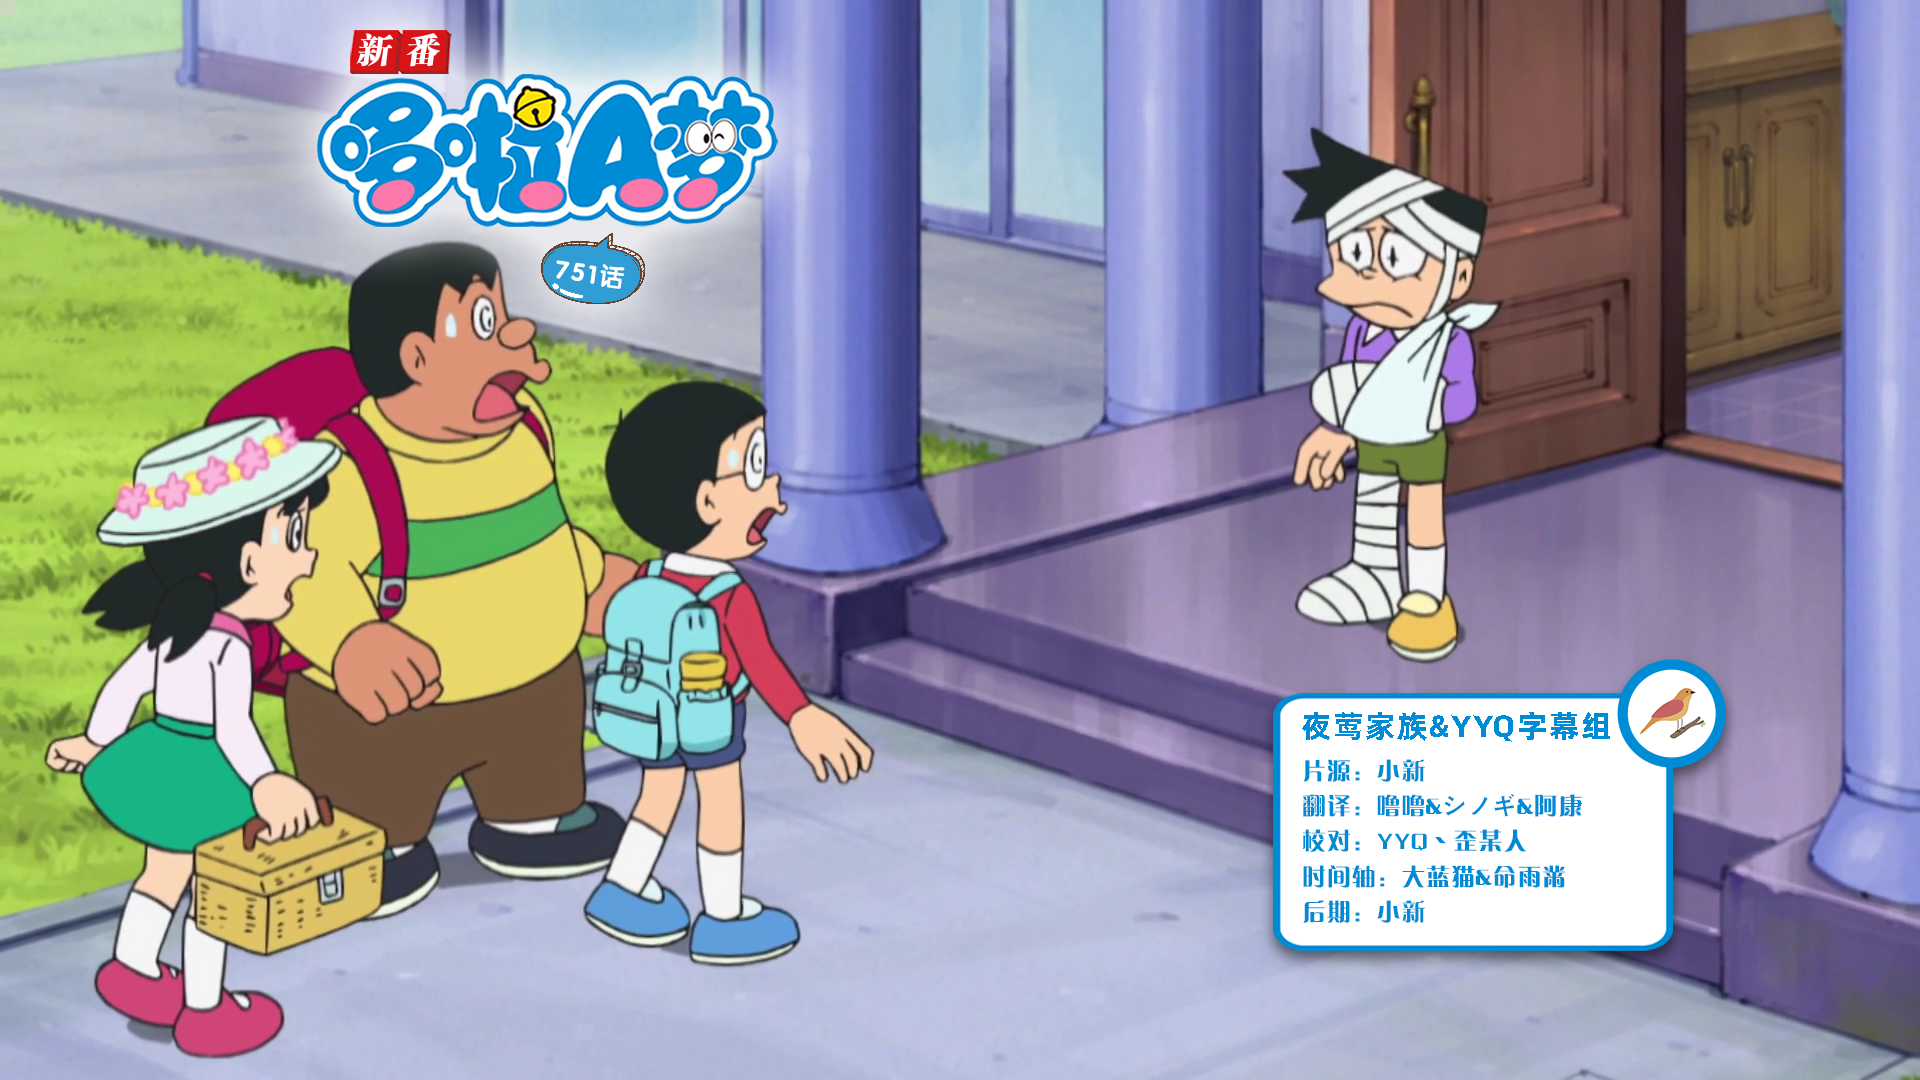 [夜莺家族&YYQ字幕组]New Doraemon 哆啦A梦新番[751][2023.03.25][AVC][1080P][GB_JP]插图icecomic动漫-云之彼端,约定的地方(´･ᴗ･`)2